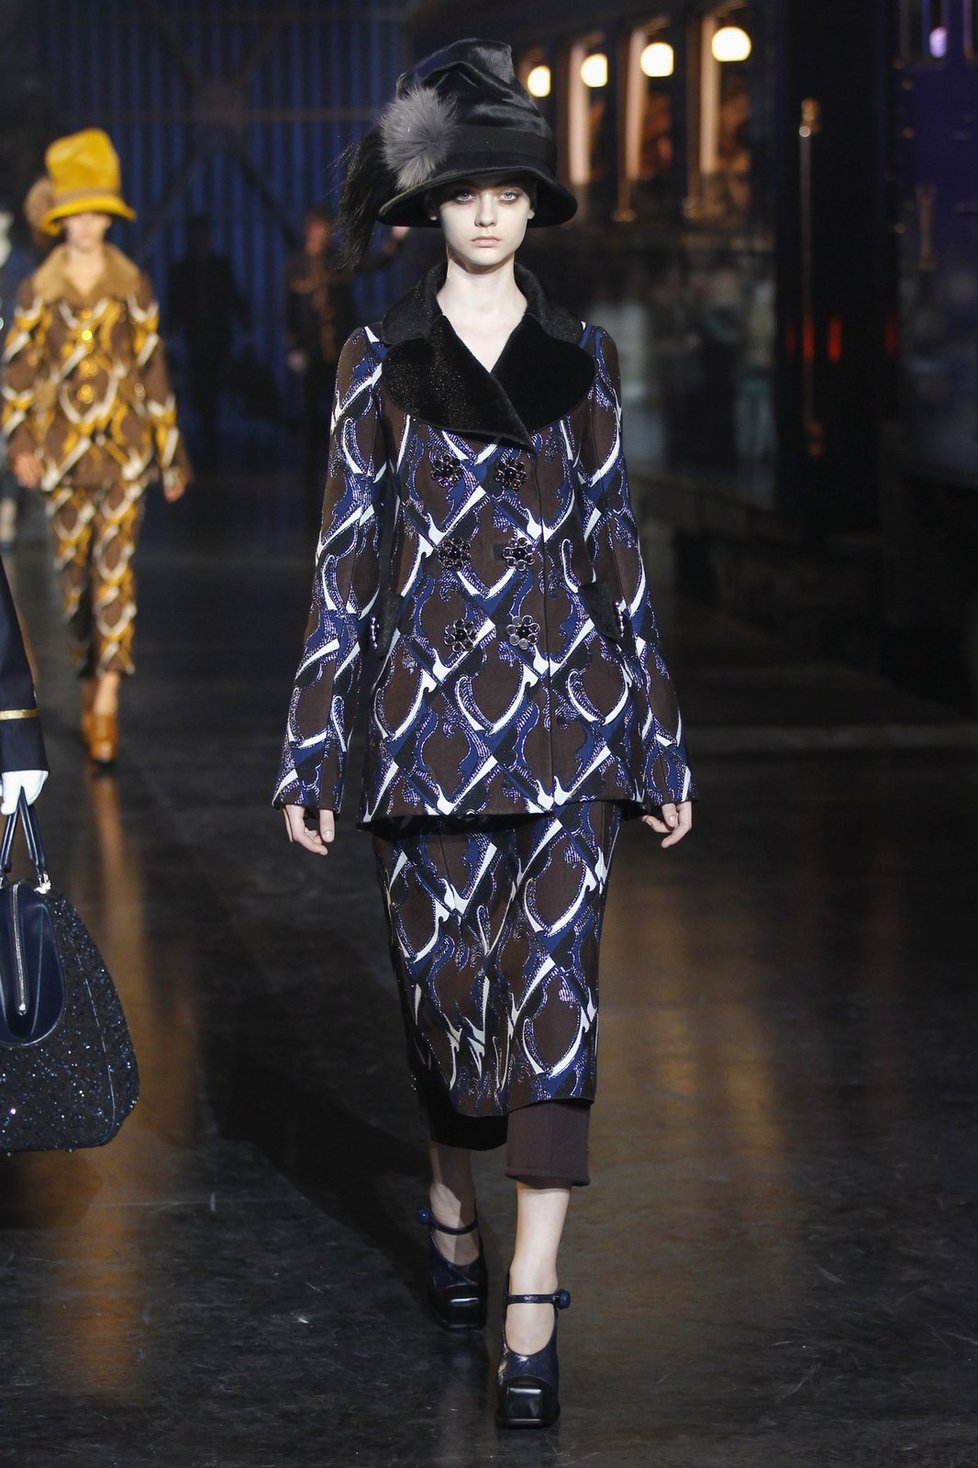 Marc Jacobs představil zimní kolekci pro Louis Vuitton představil fashion weeku vMarc Jacobs představil zimní kolekci pro Louis Vuitton představil fashion weeku v Paříži  Paříži